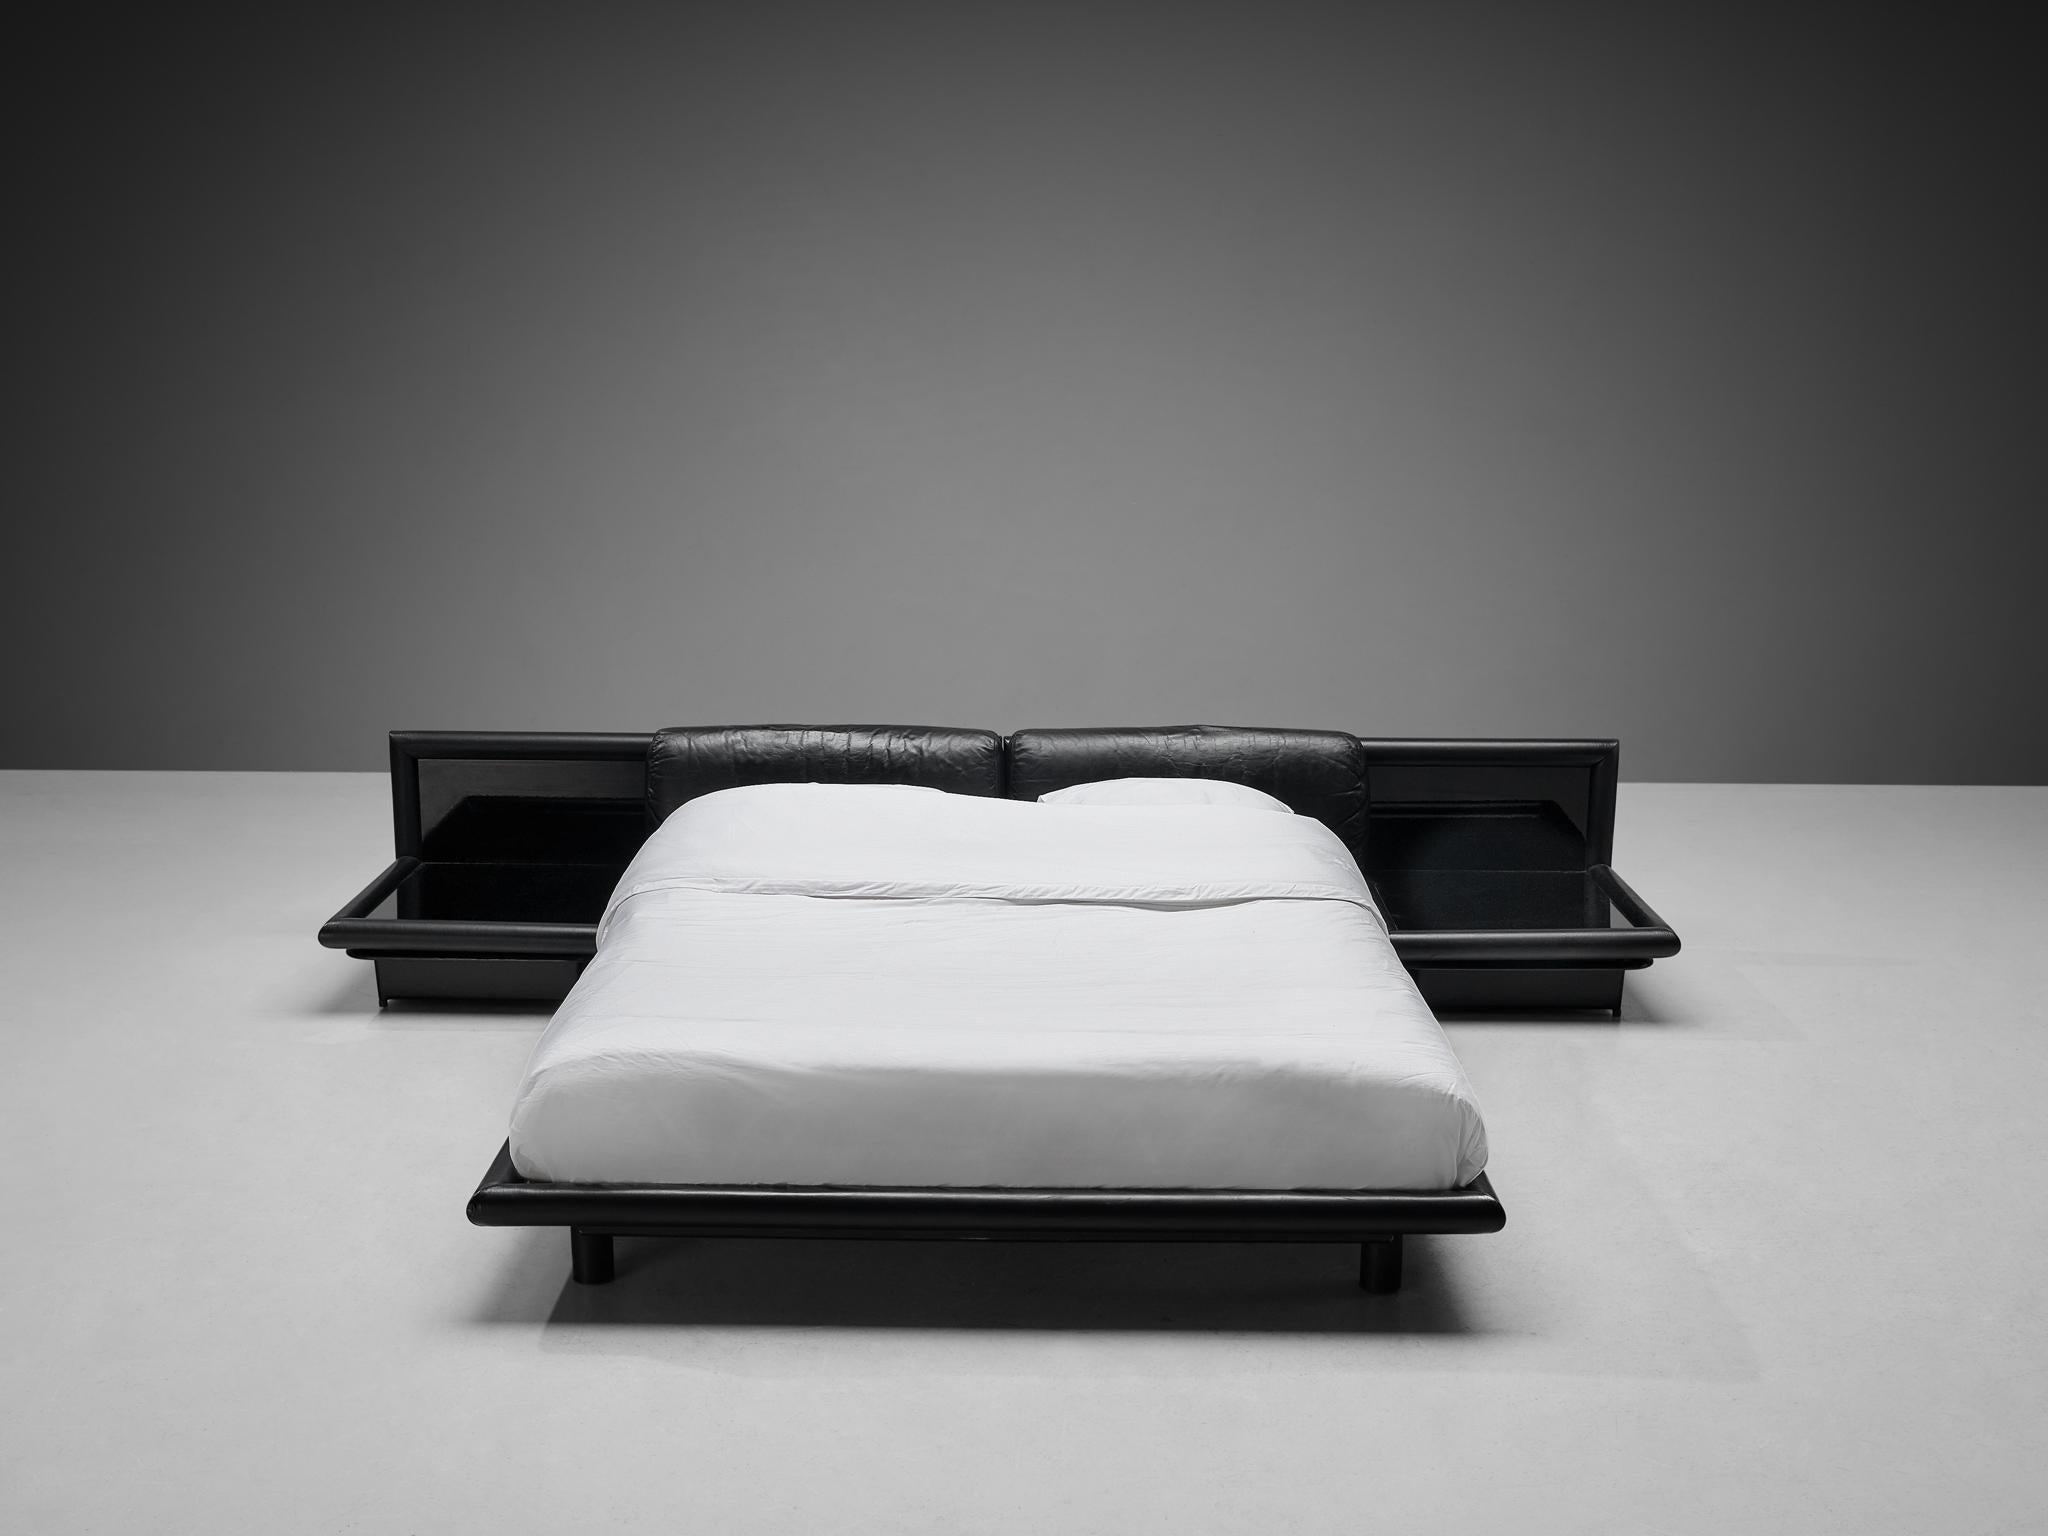 Afra & Tobia Scarpa pour Molteni, lit avec tables de nuit modèle 'Morna', cuir, verre opalin, bois, plastique, Italie, conçu en 1972 

Ce lit rare, baptisé 